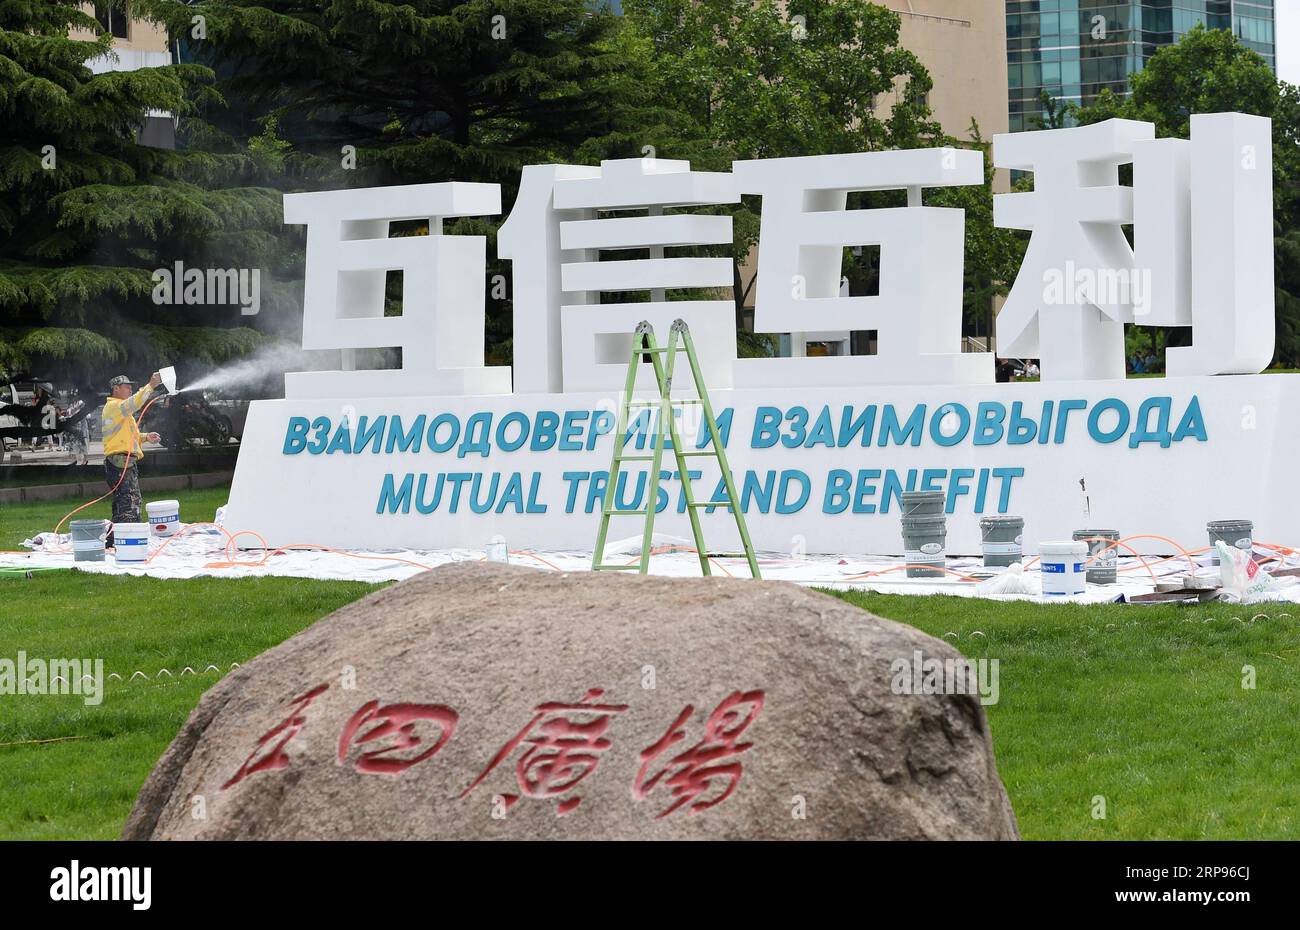 (190326) -- PEKING, 26. März 2019 (Xinhua) -- Ein Mitarbeiter schmückt ein Schild für den Qingdao-Gipfel der Shanghai Cooperation Organization (SCO) in Qingdao, ostchinesische Provinz Shandong, 2. Juni 2018. (Xinhua/Ma Ning) Xinhua-Schlagzeilen: Fünf Jahre später, Xis Vision der Zivilisation enthüllender in einer unsicheren Welt PUBLICATIONxNOTxINxCHN Stockfoto